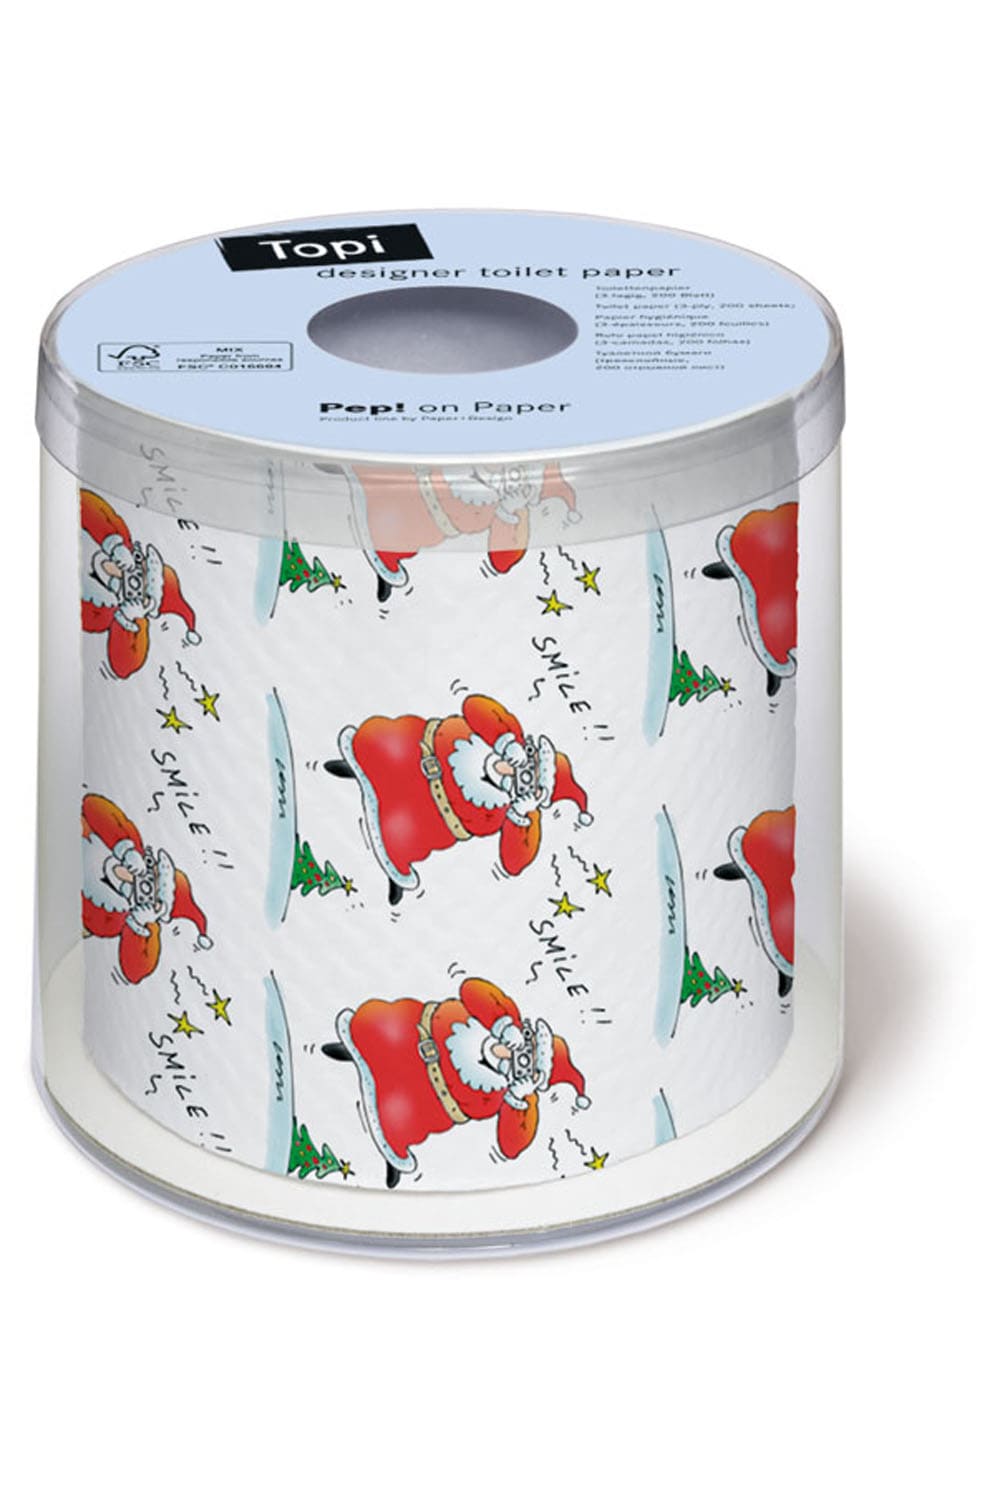 Dieses witzige Toilettenpapier sorgt bestimmt für die beste Unterhaltung auf dem Klo. Ein absoluter Spassfaktor für das Bad, ist dieses Weihnachtsmann Klopapier.  Ideal als Geschenk zum Samichlaustag oder auch für eine kreative und lustige Dekoration an einem Weihnachtsfest.